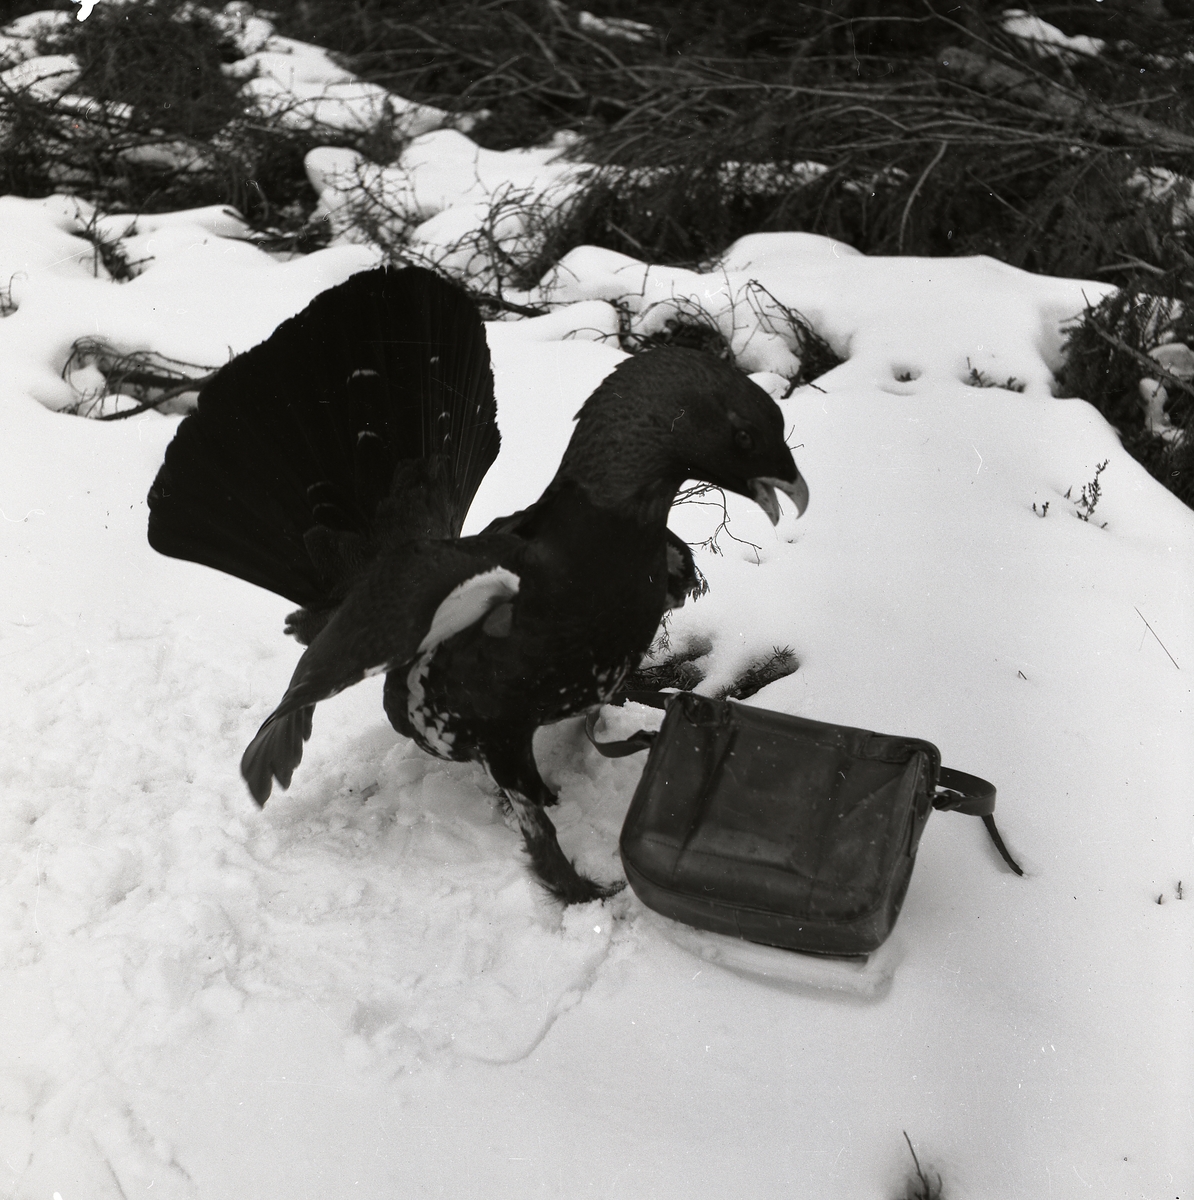 Med utbredda vingar och upprest fjäderdräkt attackerar tjädertuppen en väska. Framför väskan har fågeln räfsat i snön med sina klor. Bakom den oense väskan och tjädern har ris och kvistar letat sig fram ur snön våren 1954.